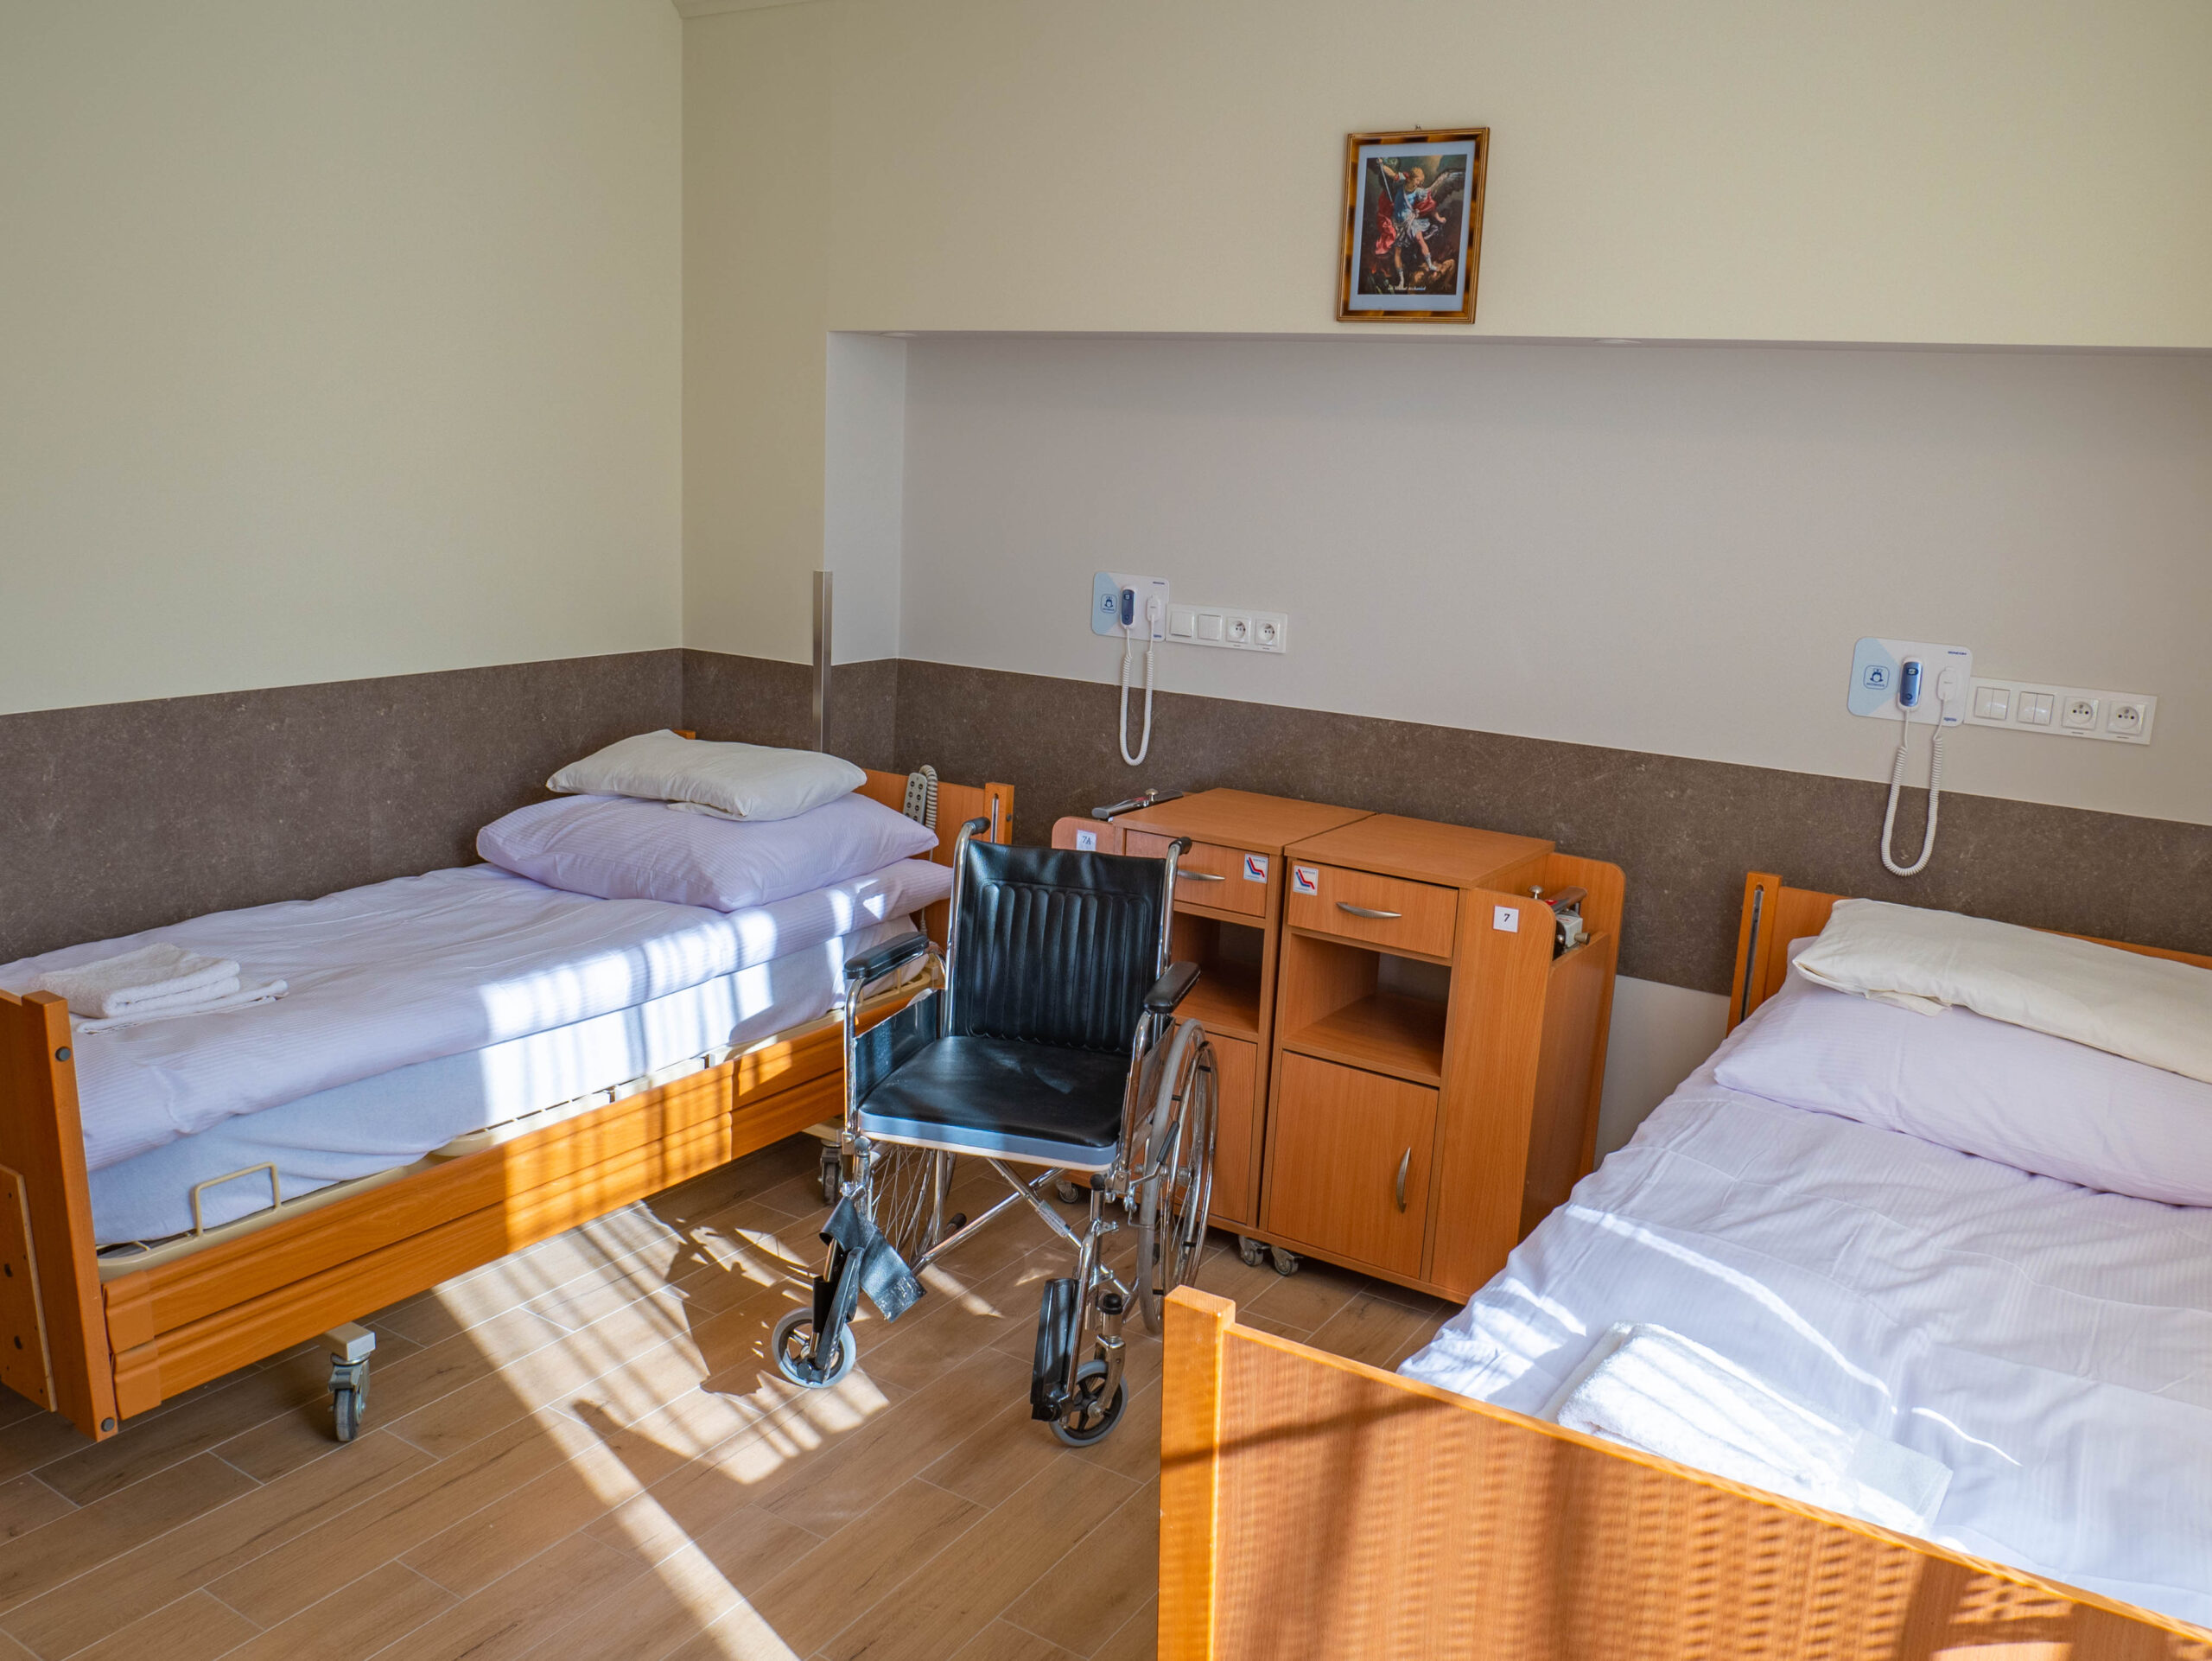 Zdjęcie pokoju w Warszawskim domu seniora. Na zdjęciu widać dwa łóżka, dwie szafki, wózek inwalidzki i telefony do wzywania obsługi.